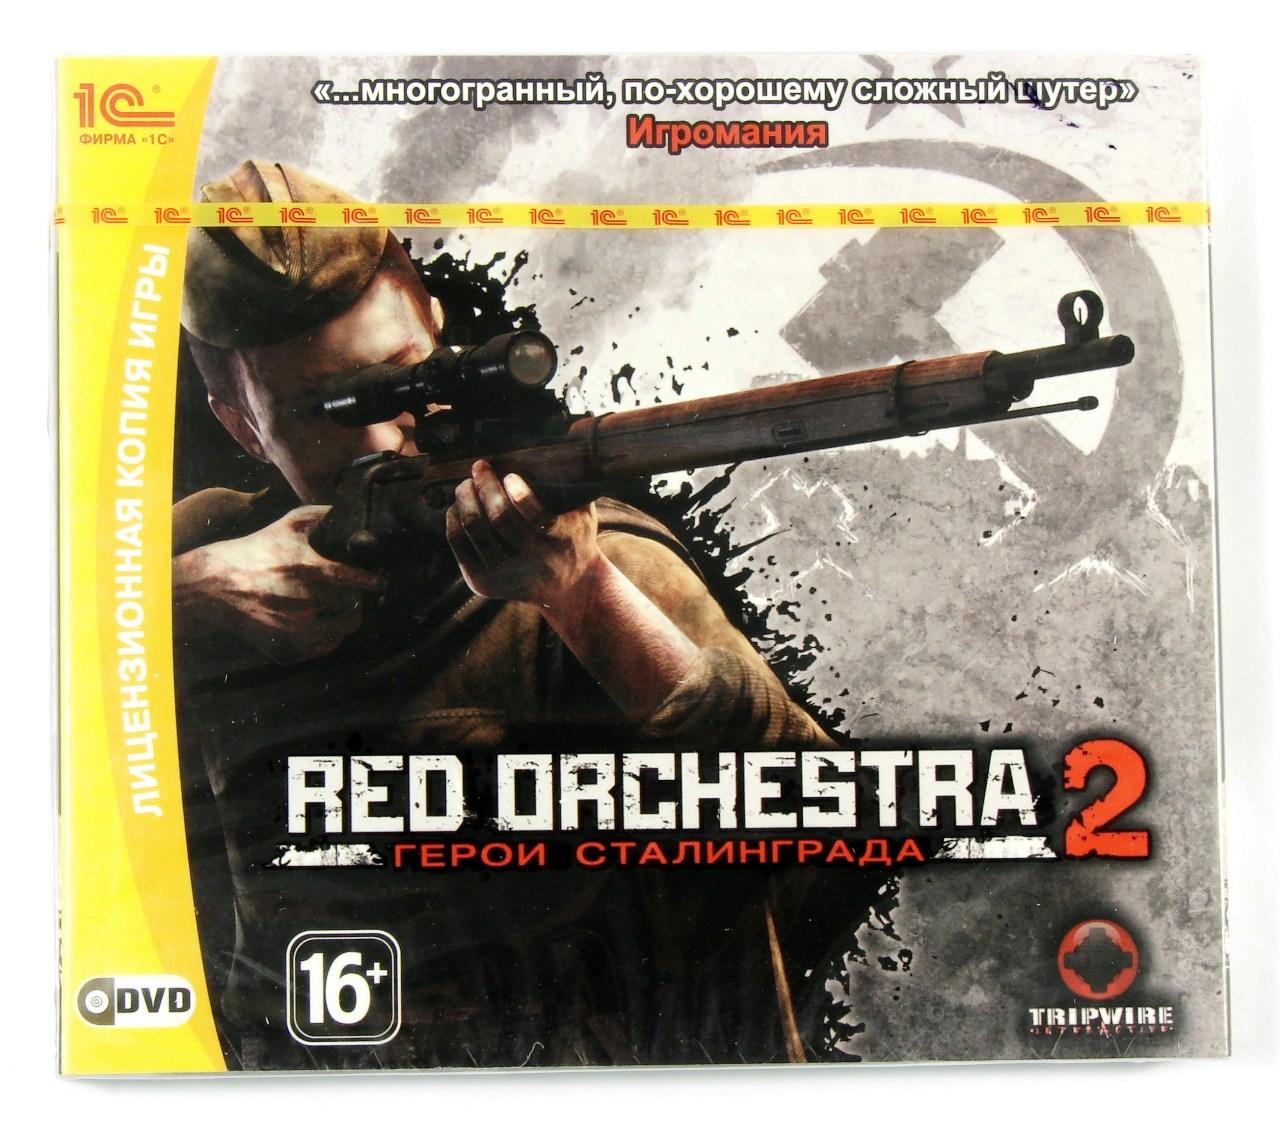 Компьютерный компакт-диск Red Orchestra 2: Герои Сталинграда (ПК), фирма "1С-СофтКлаб", DVD